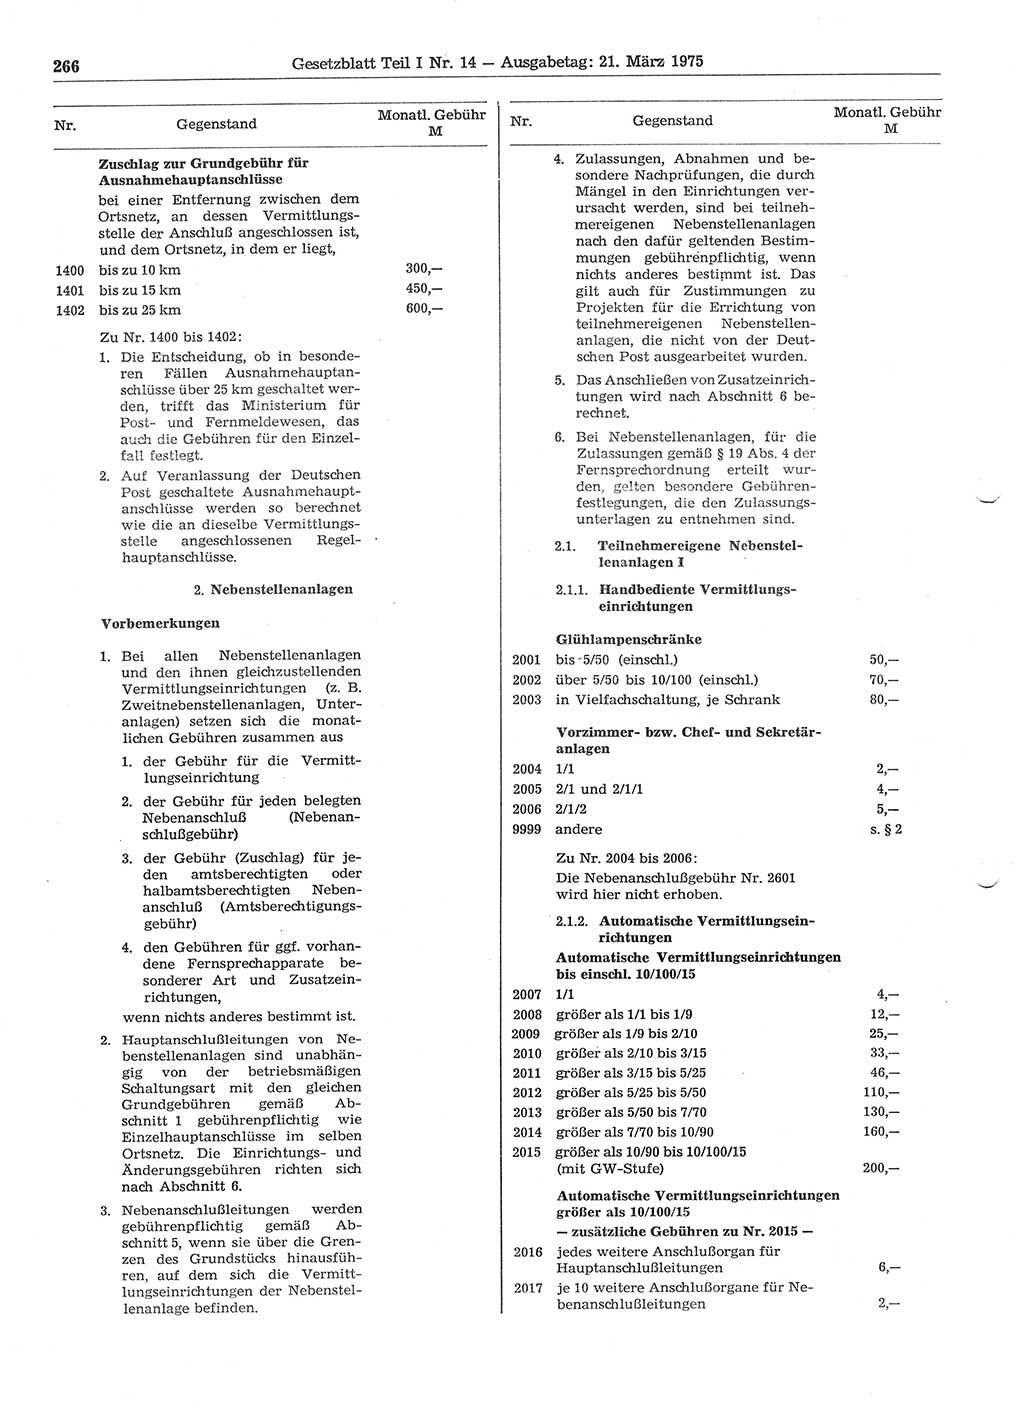 Gesetzblatt (GBl.) der Deutschen Demokratischen Republik (DDR) Teil Ⅰ 1975, Seite 266 (GBl. DDR Ⅰ 1975, S. 266)